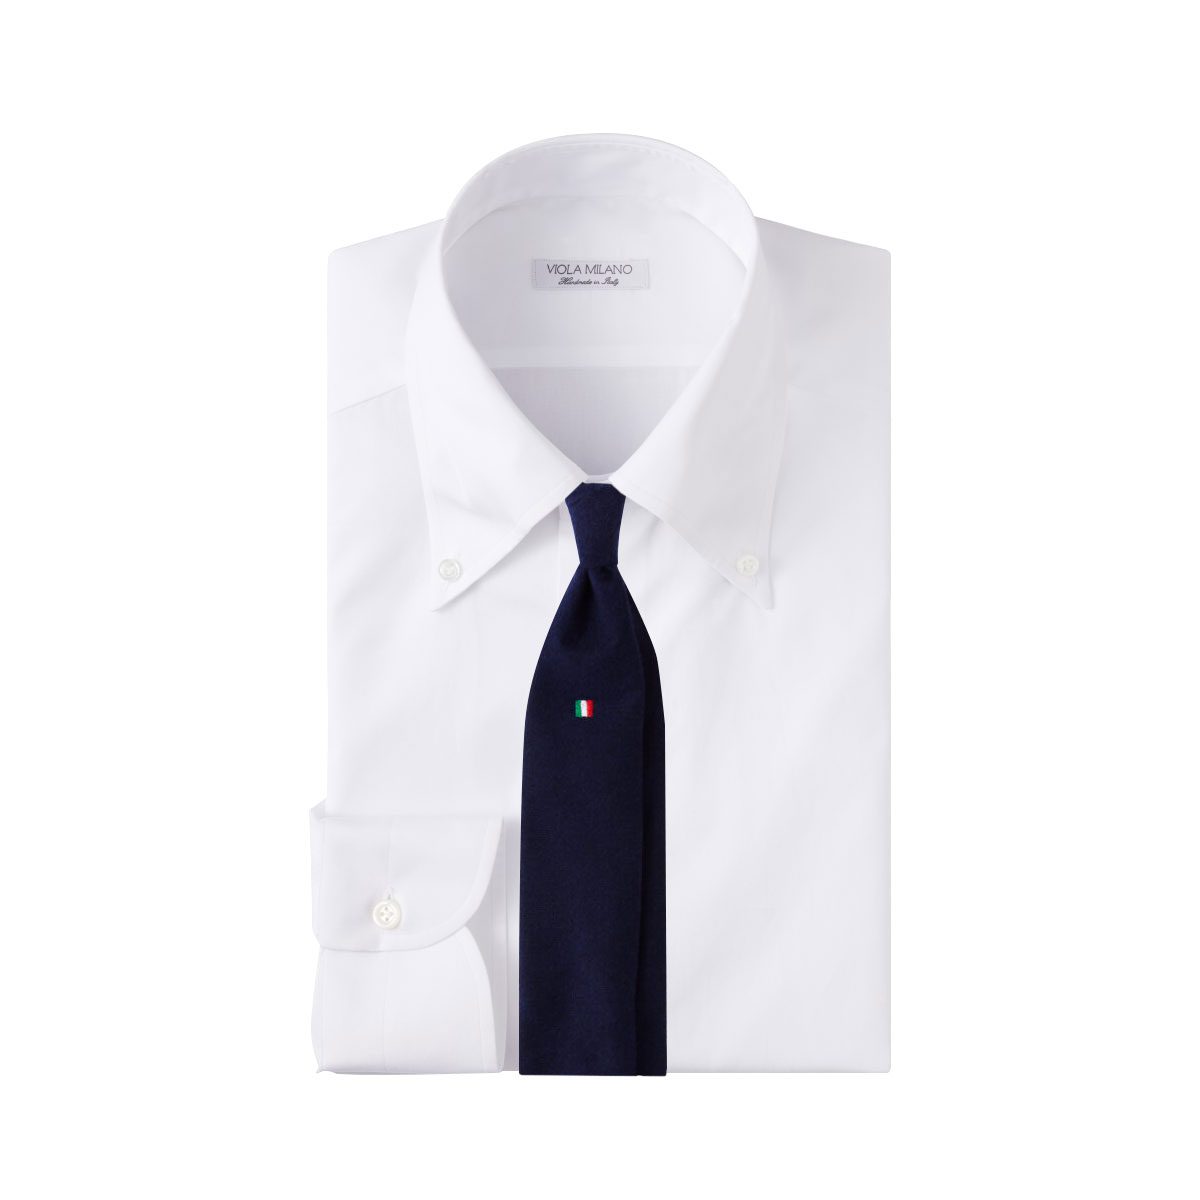 Essential Italian Package - Shirt + Tie ...